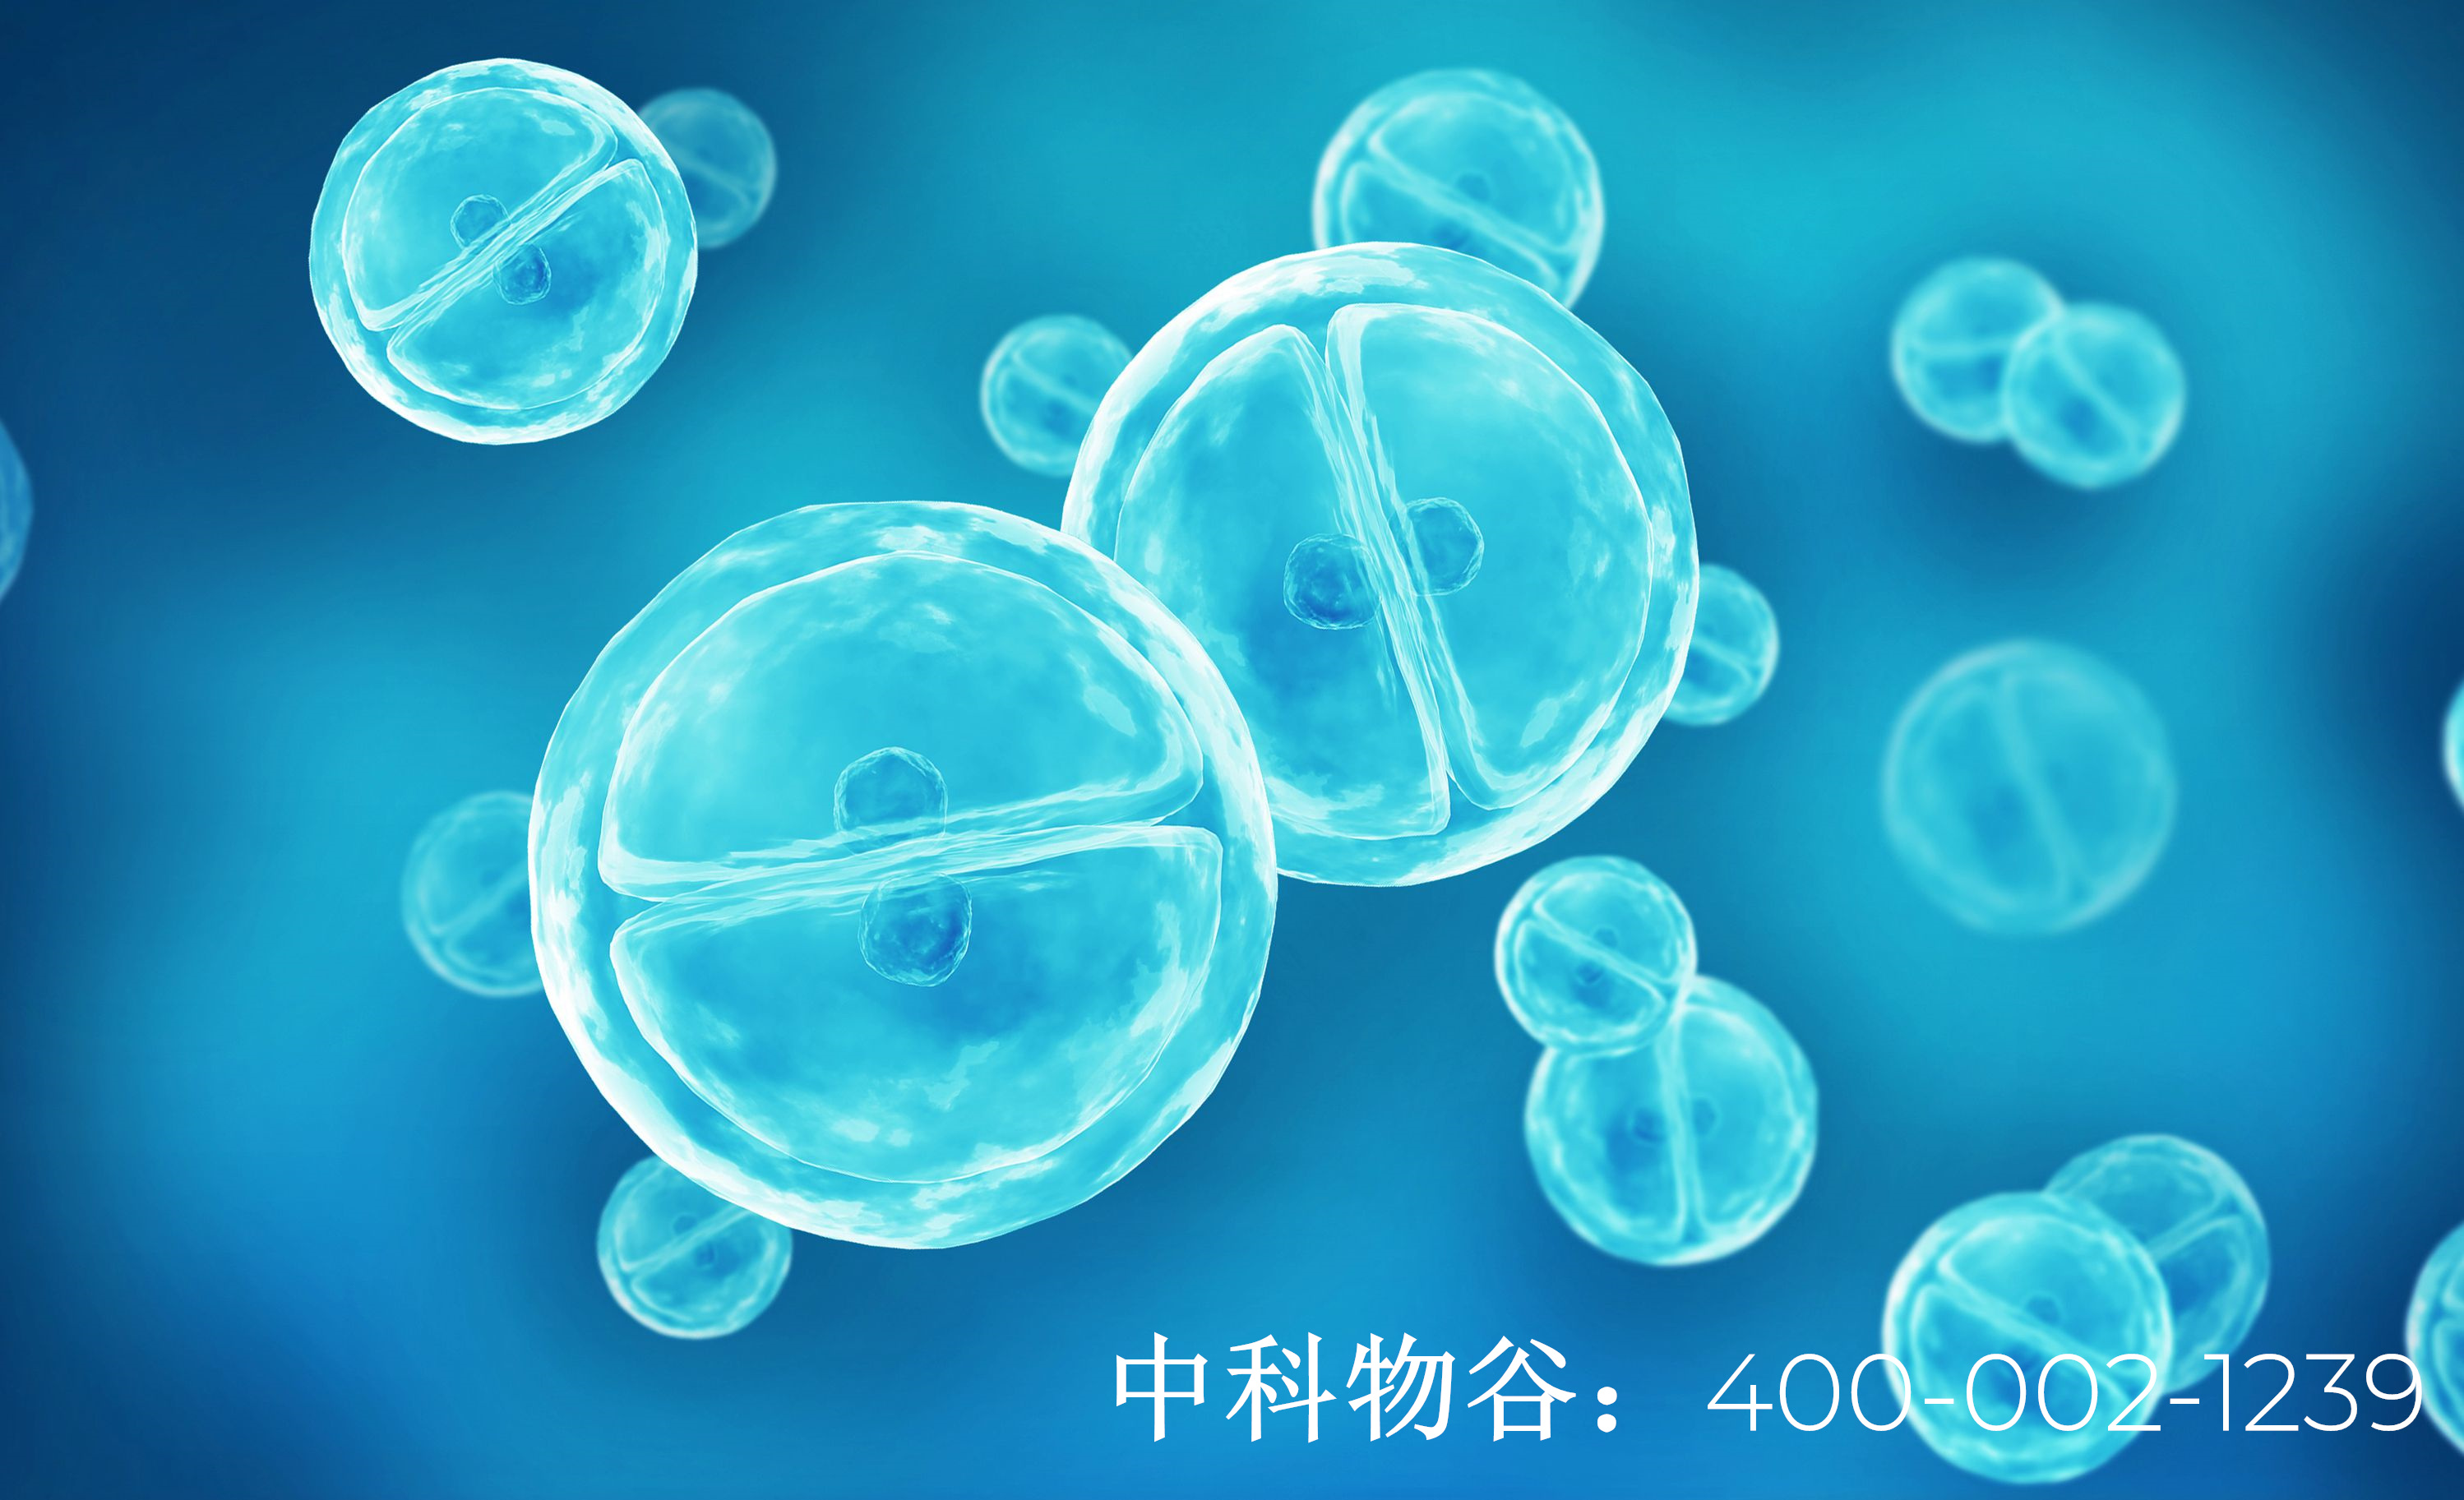 上海哪里可以做细胞免疫治疗-中科物谷干细胞